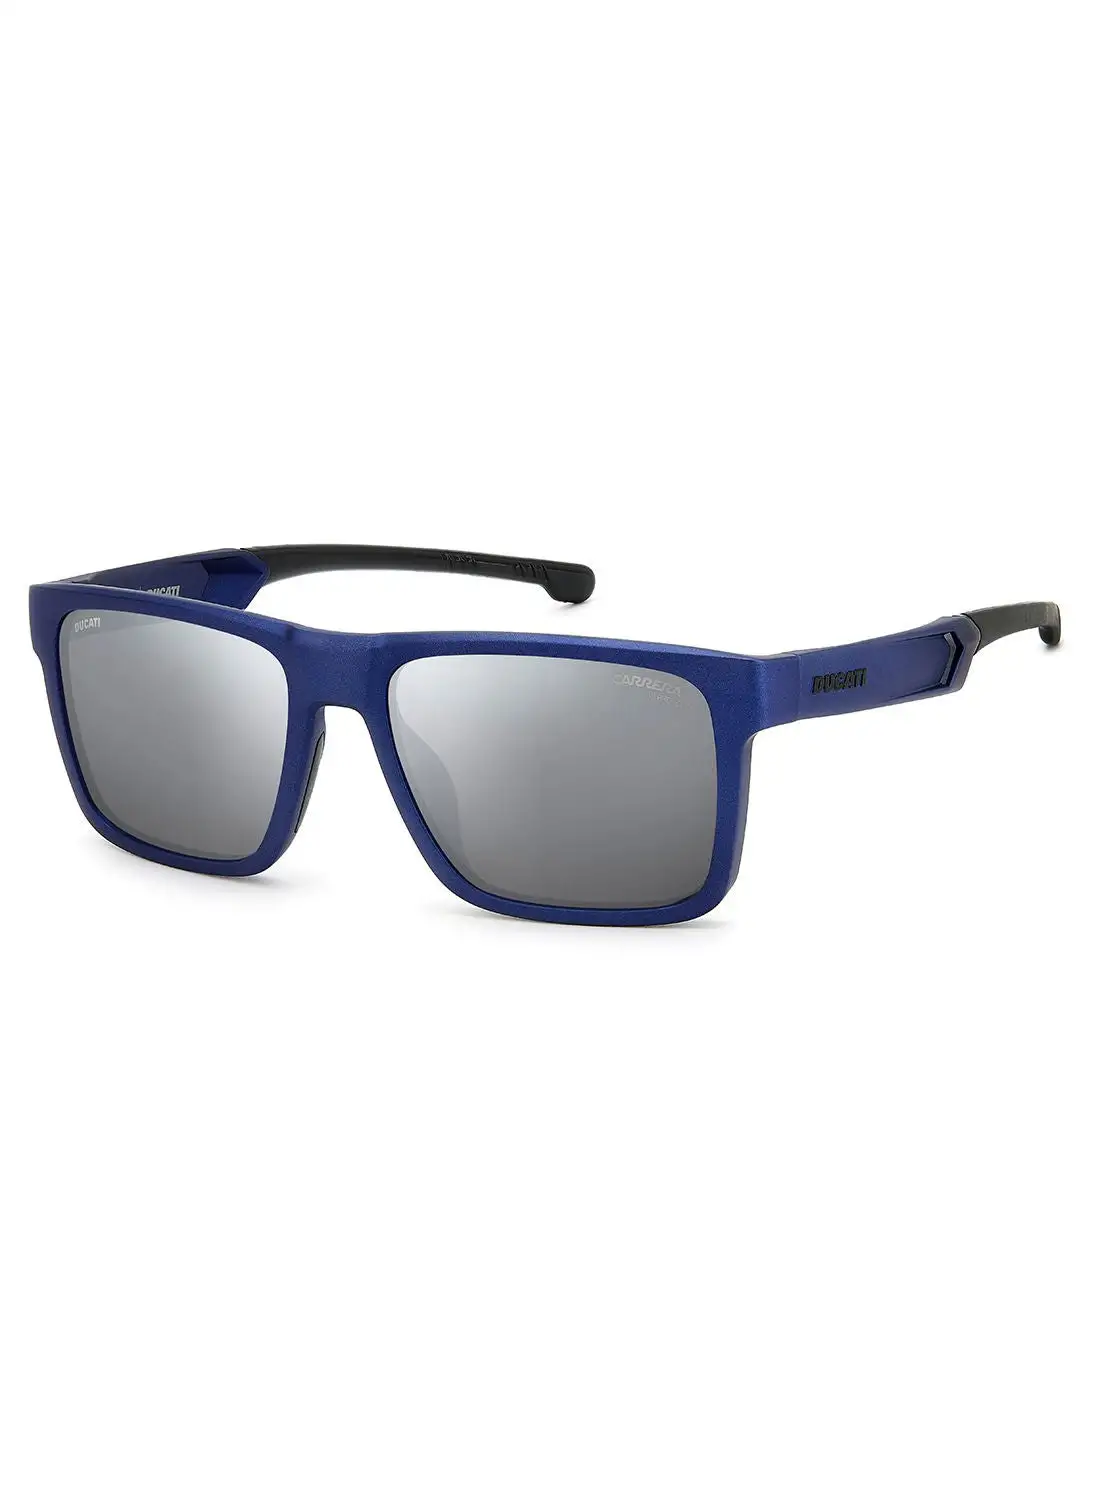 نظارة كاريرا الشمسية مستطيلة الشكل للحماية من الأشعة فوق البنفسجية للرجال - Carduc 021/S Bluemetal 55 - مقاس العدسة: 55 ملم